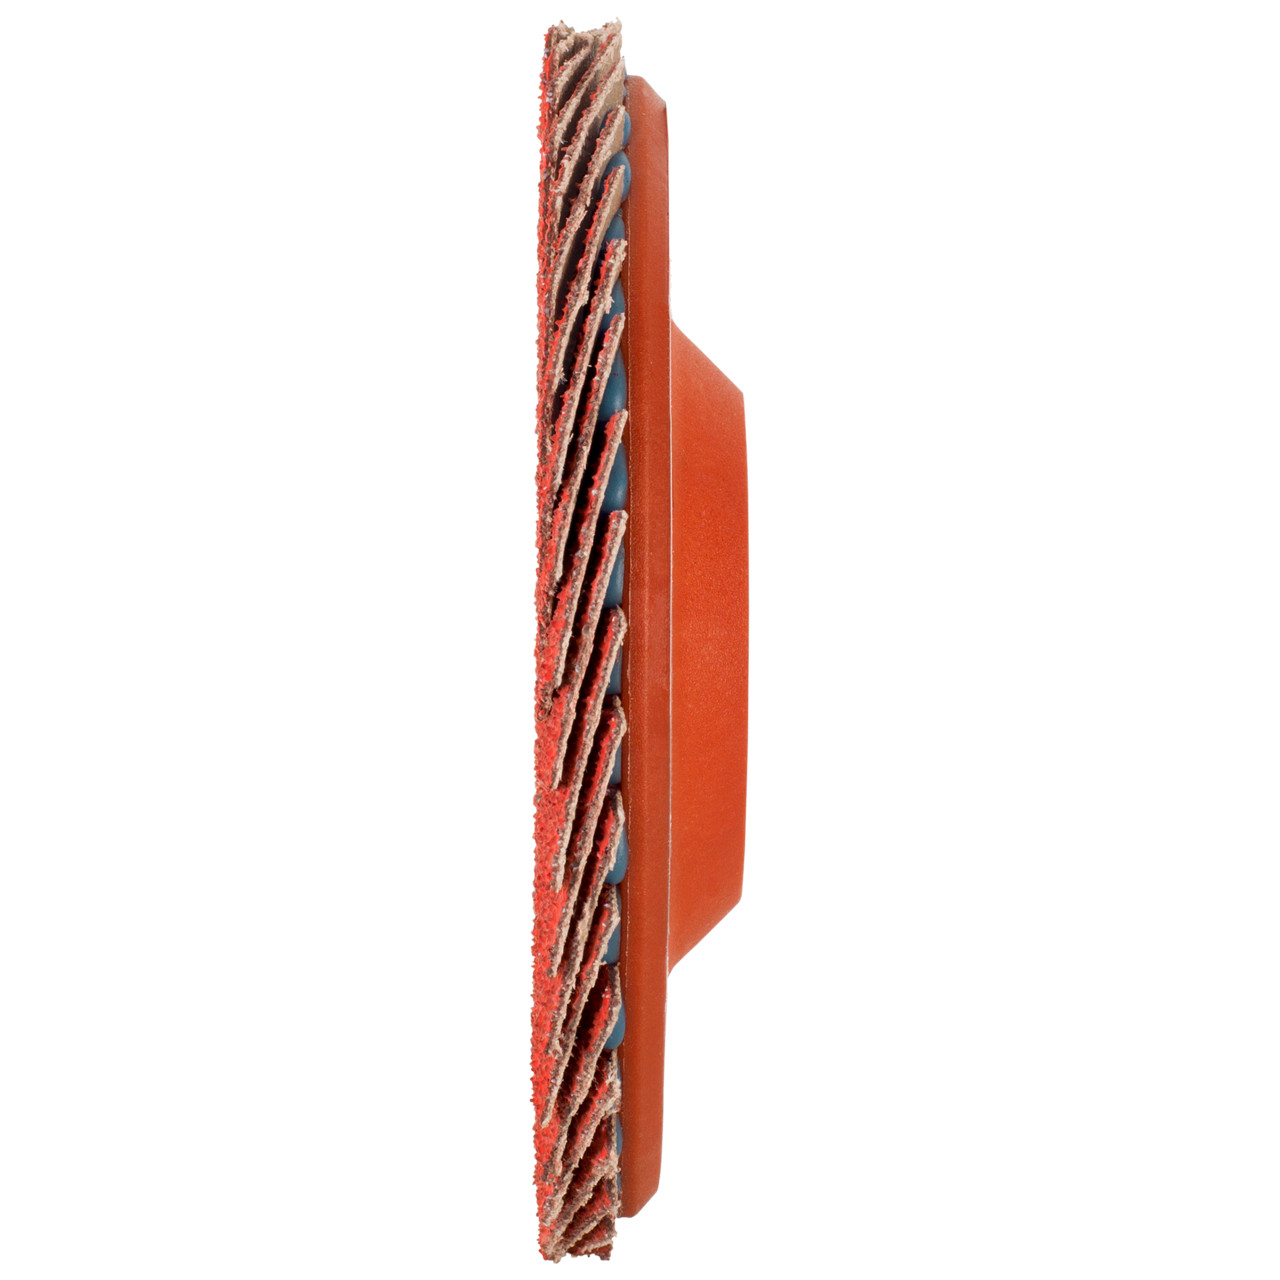 Tyrolit Getande borgring DxH 125x22,23 CERAMIC voor roestvrij staal, P40, vorm: 28N - rechte uitvoering (kunststof draaglichaam), Art. 719846